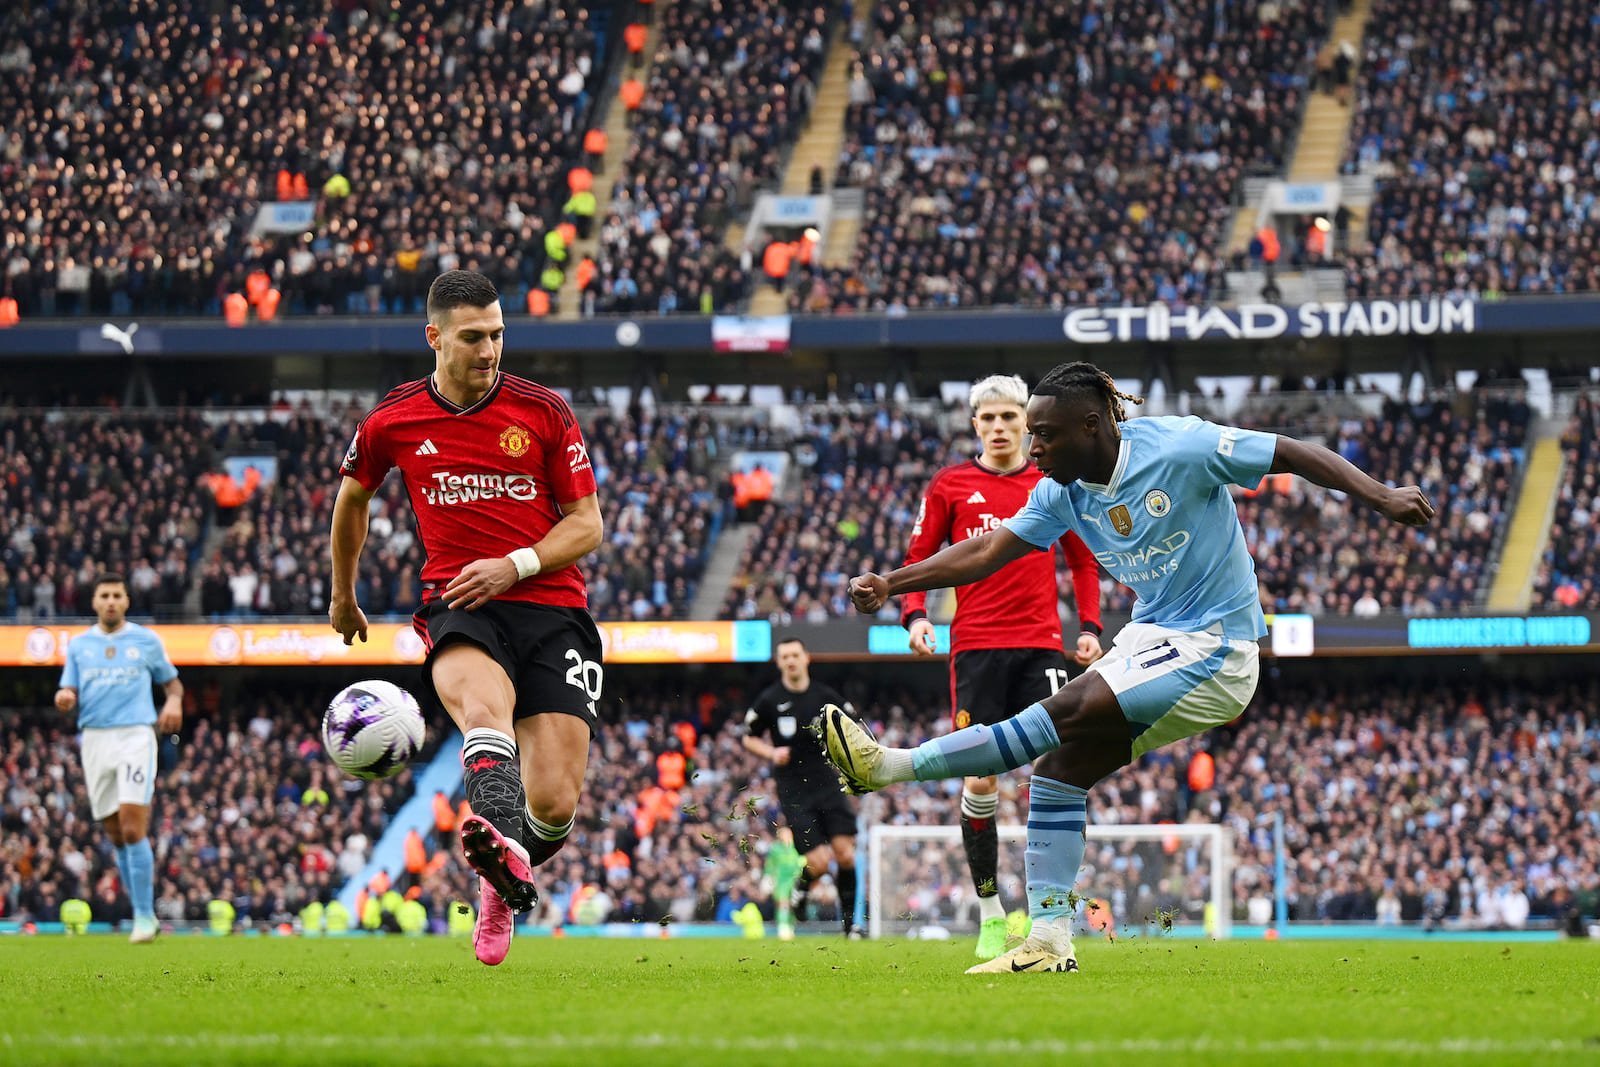 Diogo Dalot dominated proceedings vs Jeremy Doku in Manchester derby - Bóng Đá